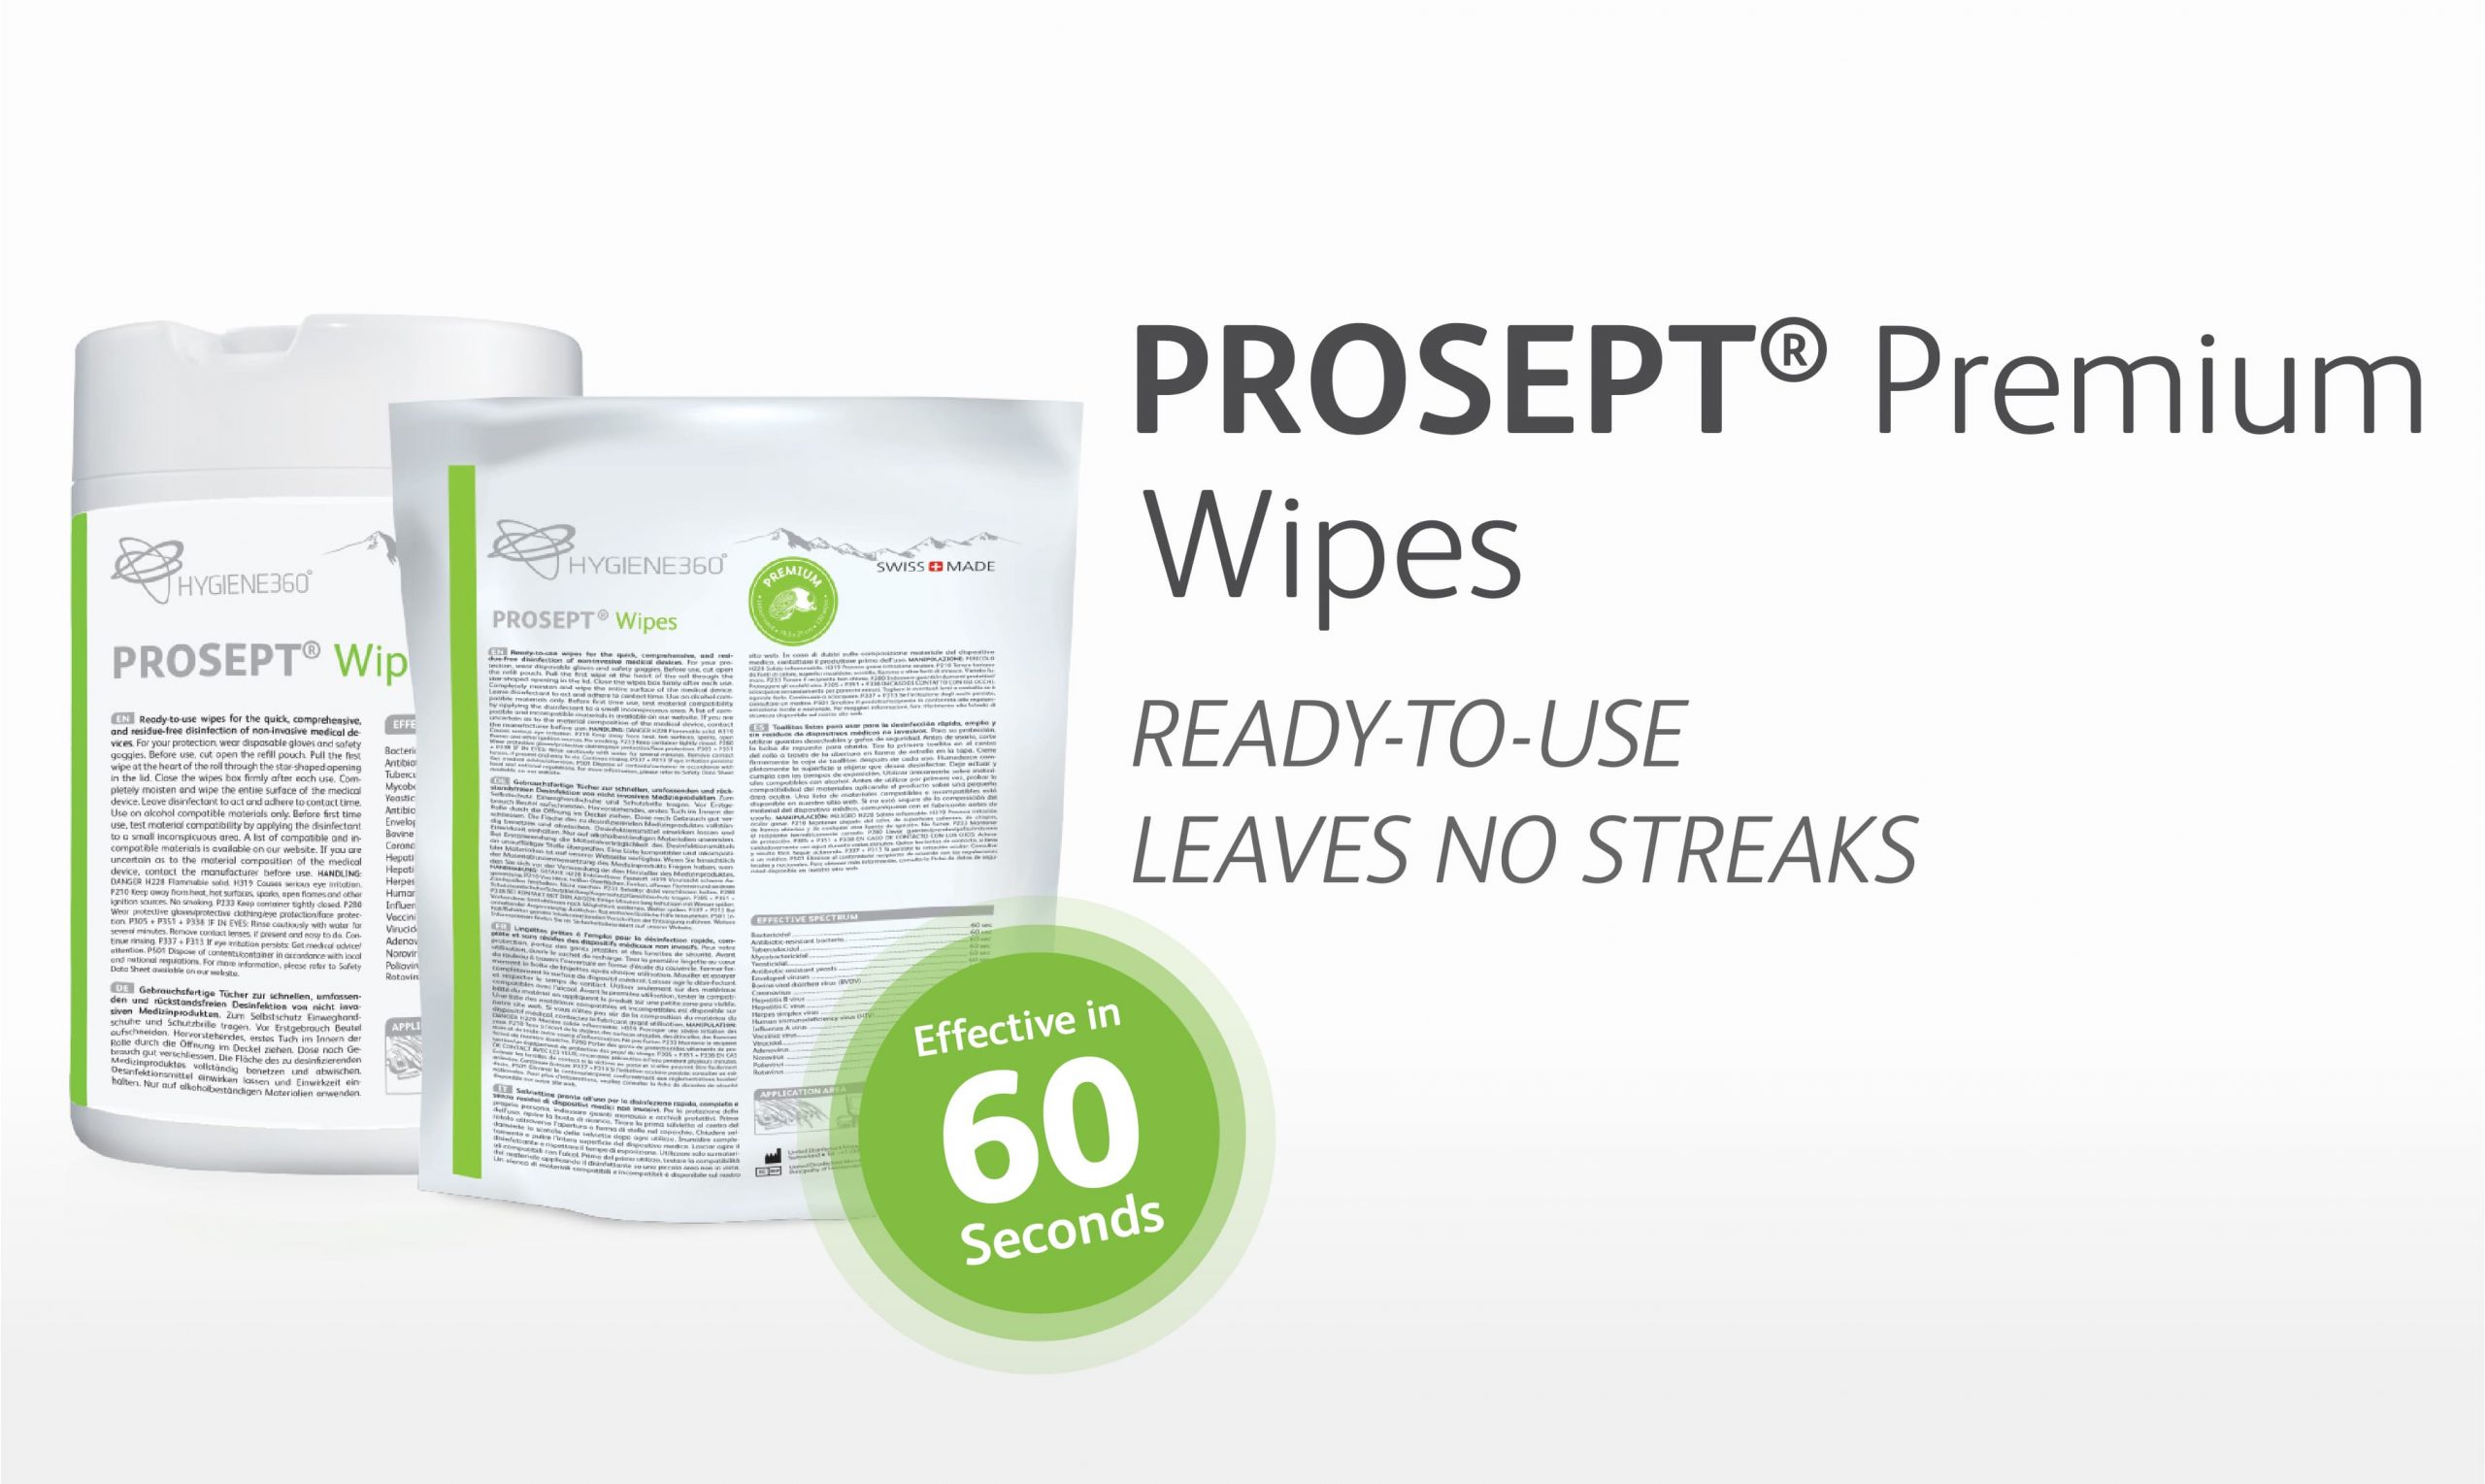 PROSEPT® Premium Wipes